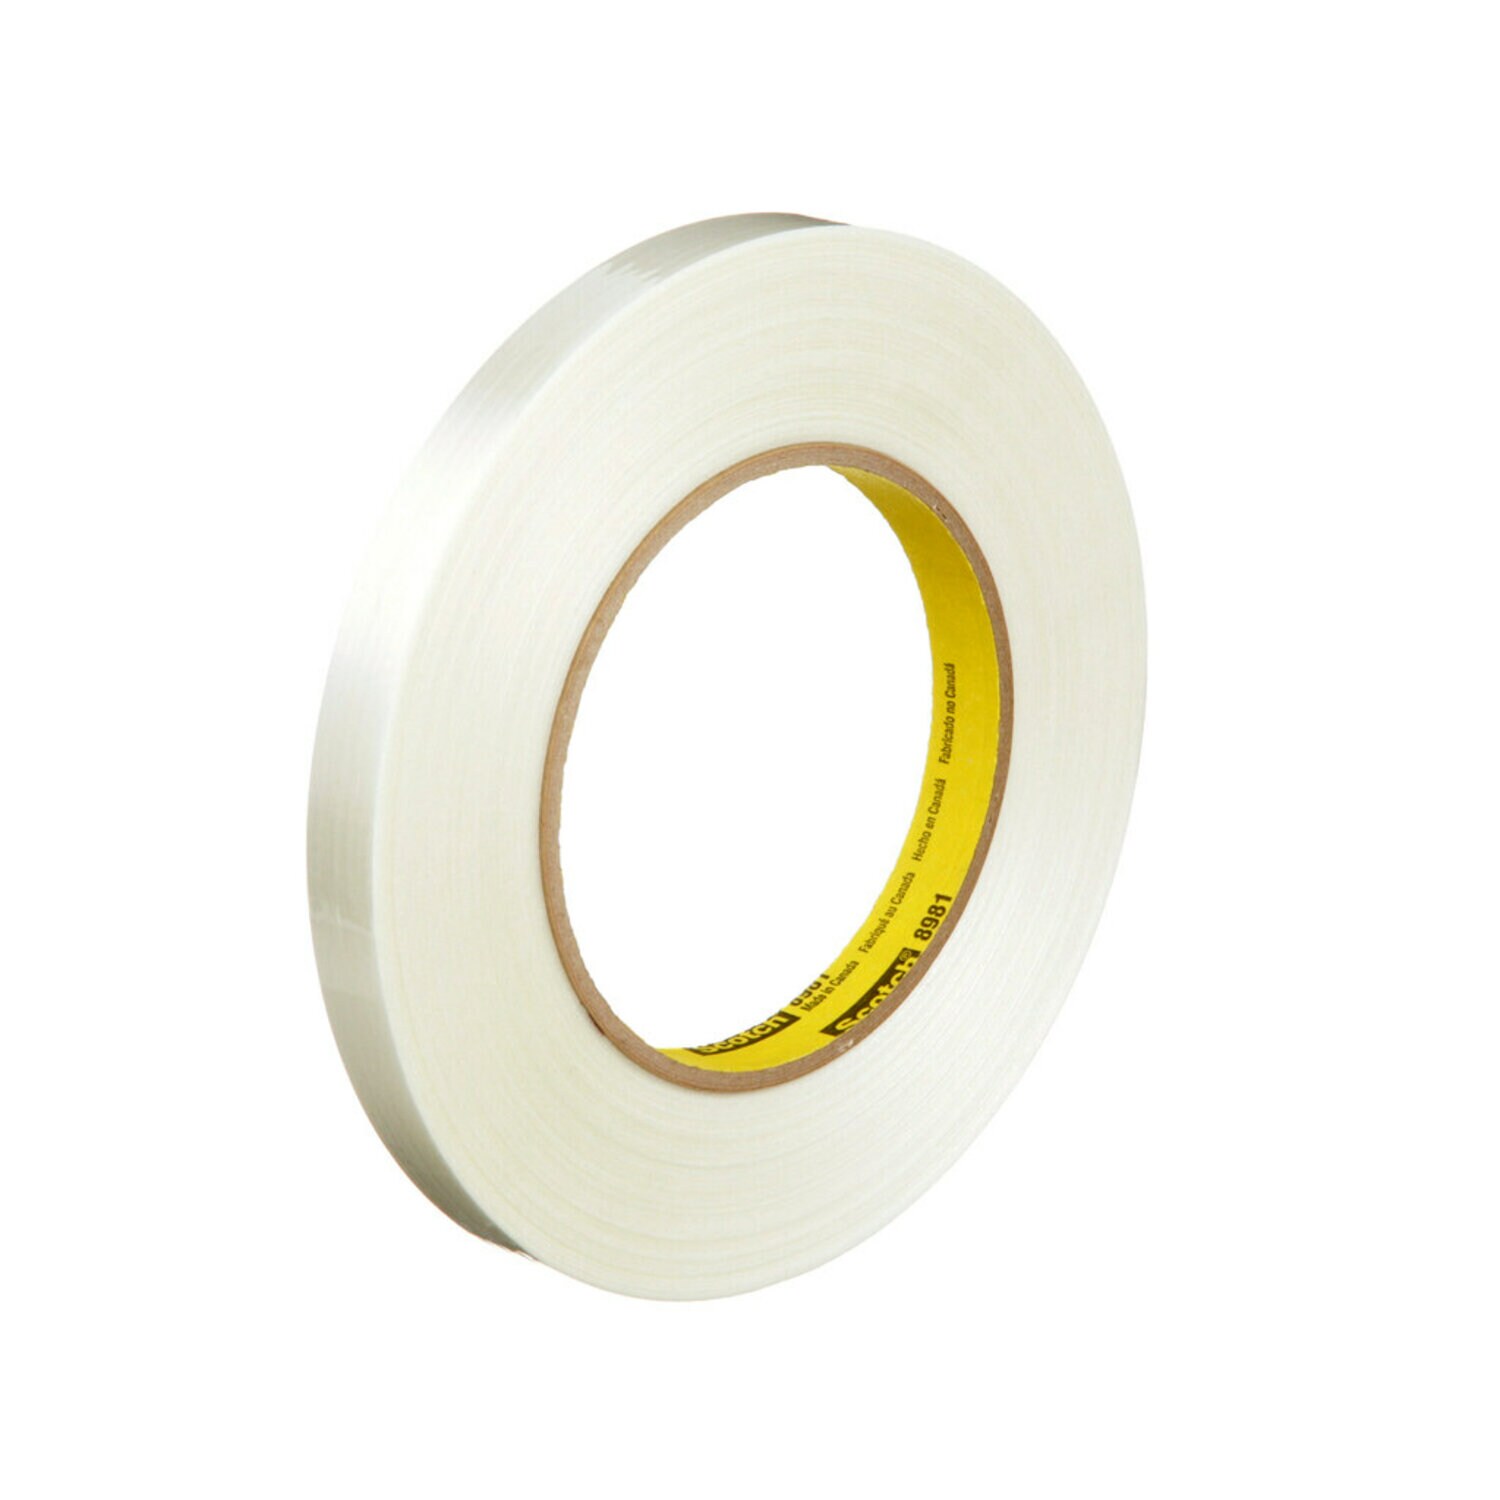 7000123466 - Scotch Filament Tape 8981, Clear, 12 mm x 55 m, 6.6 mil, 72 rolls per
case